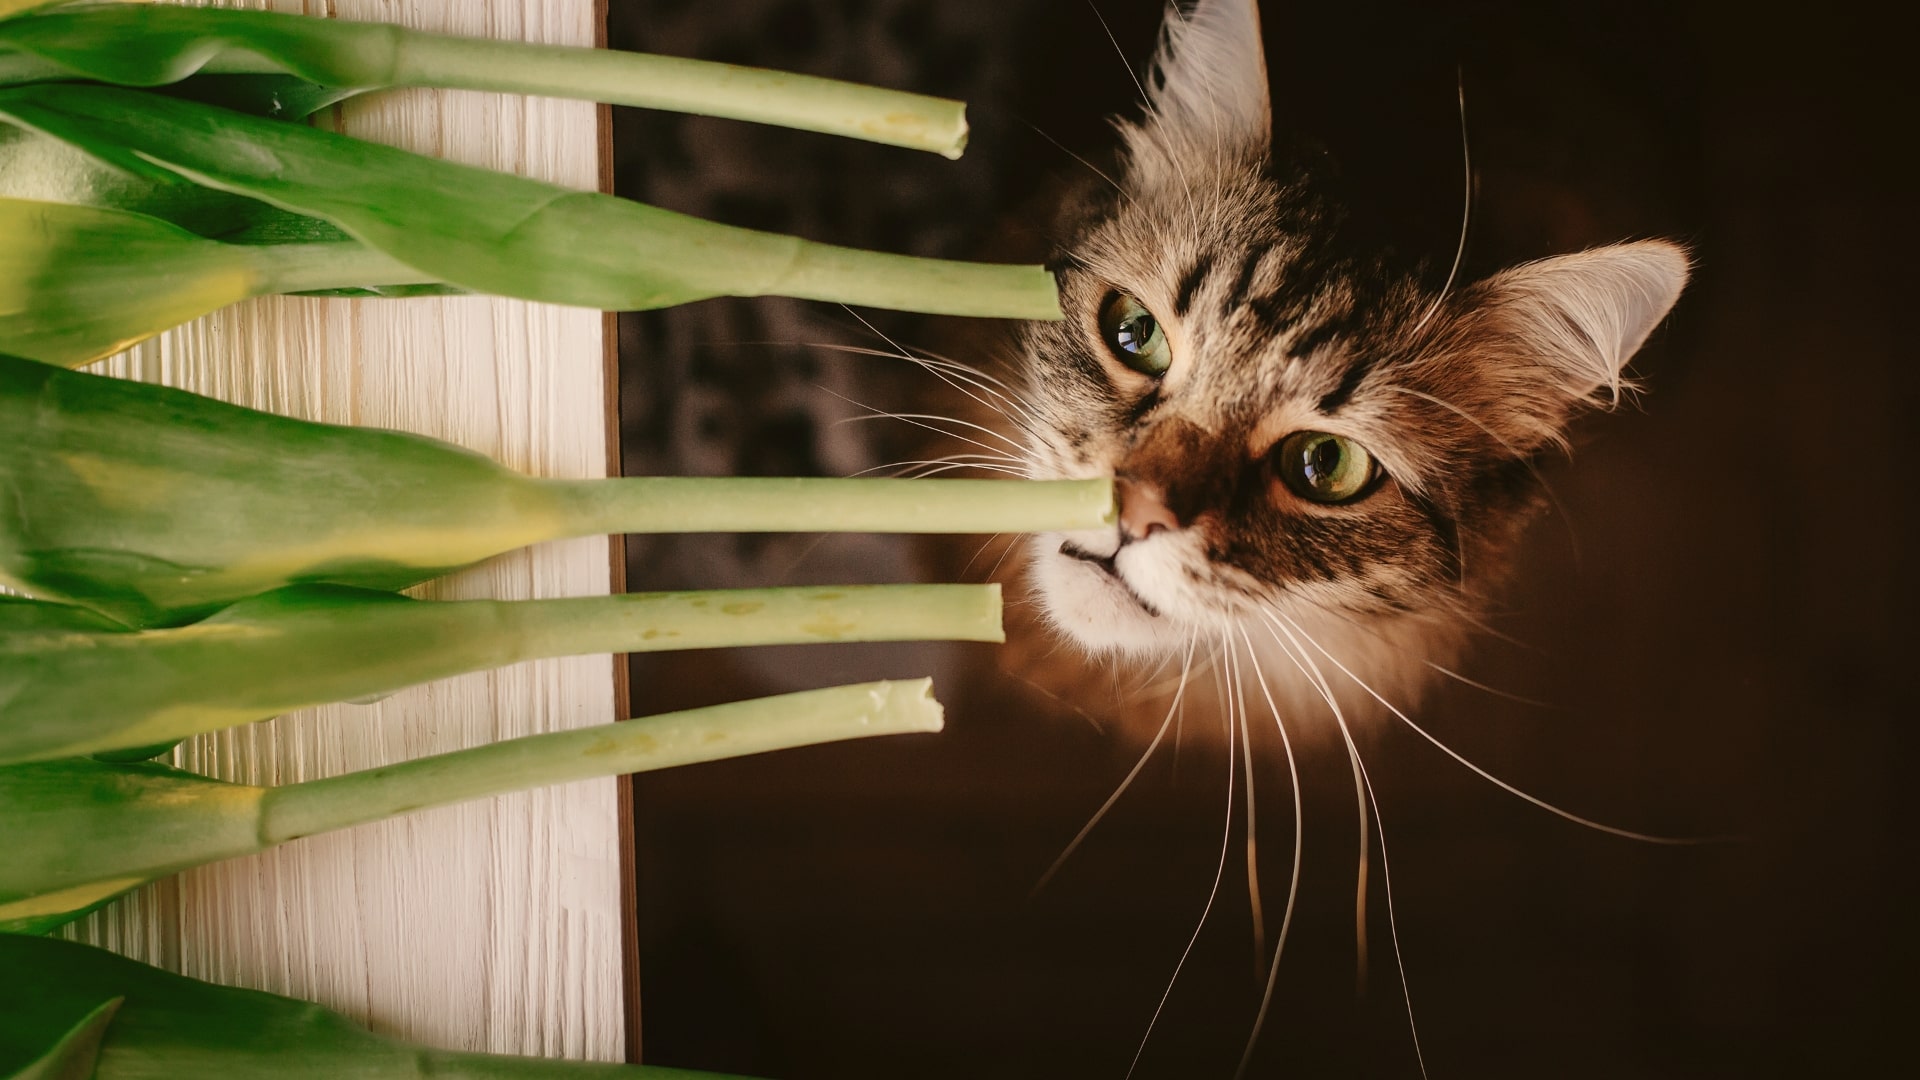 Welke planten zijn giftig voor katten? Deze kat loert op tulpen, een van de giftige planten voor katten in Nederland.